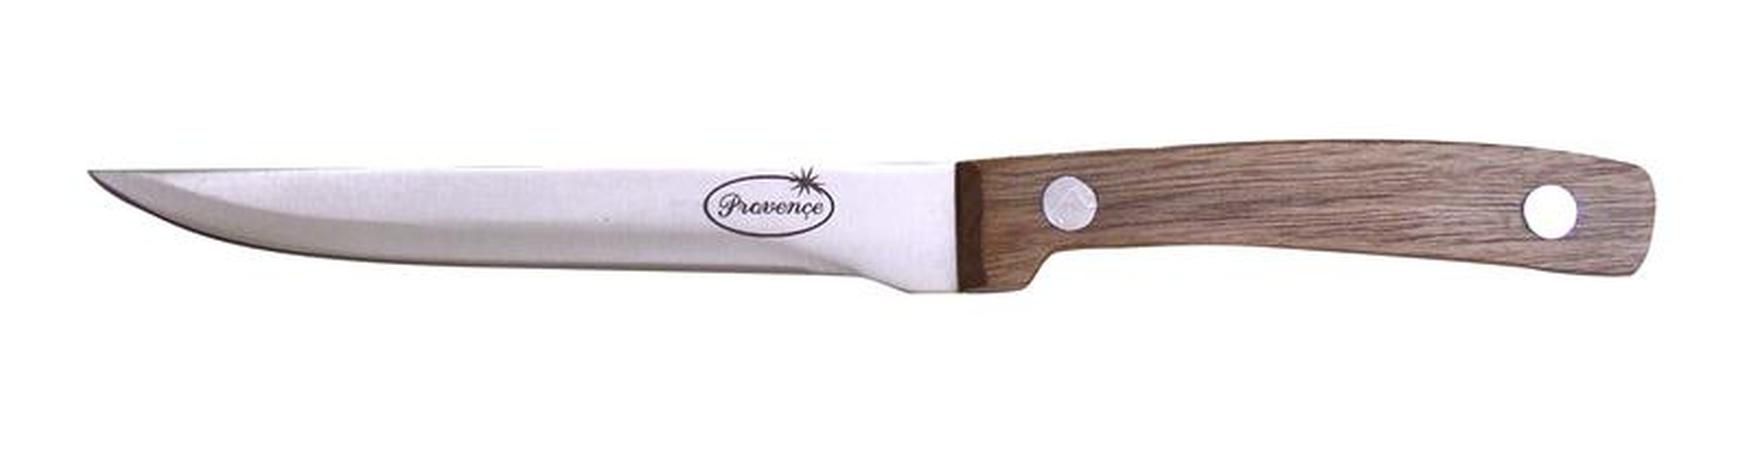 Vykošťovací nůž Provence wood 15cm, nerezová ocel, dřevo - Kitos.cz